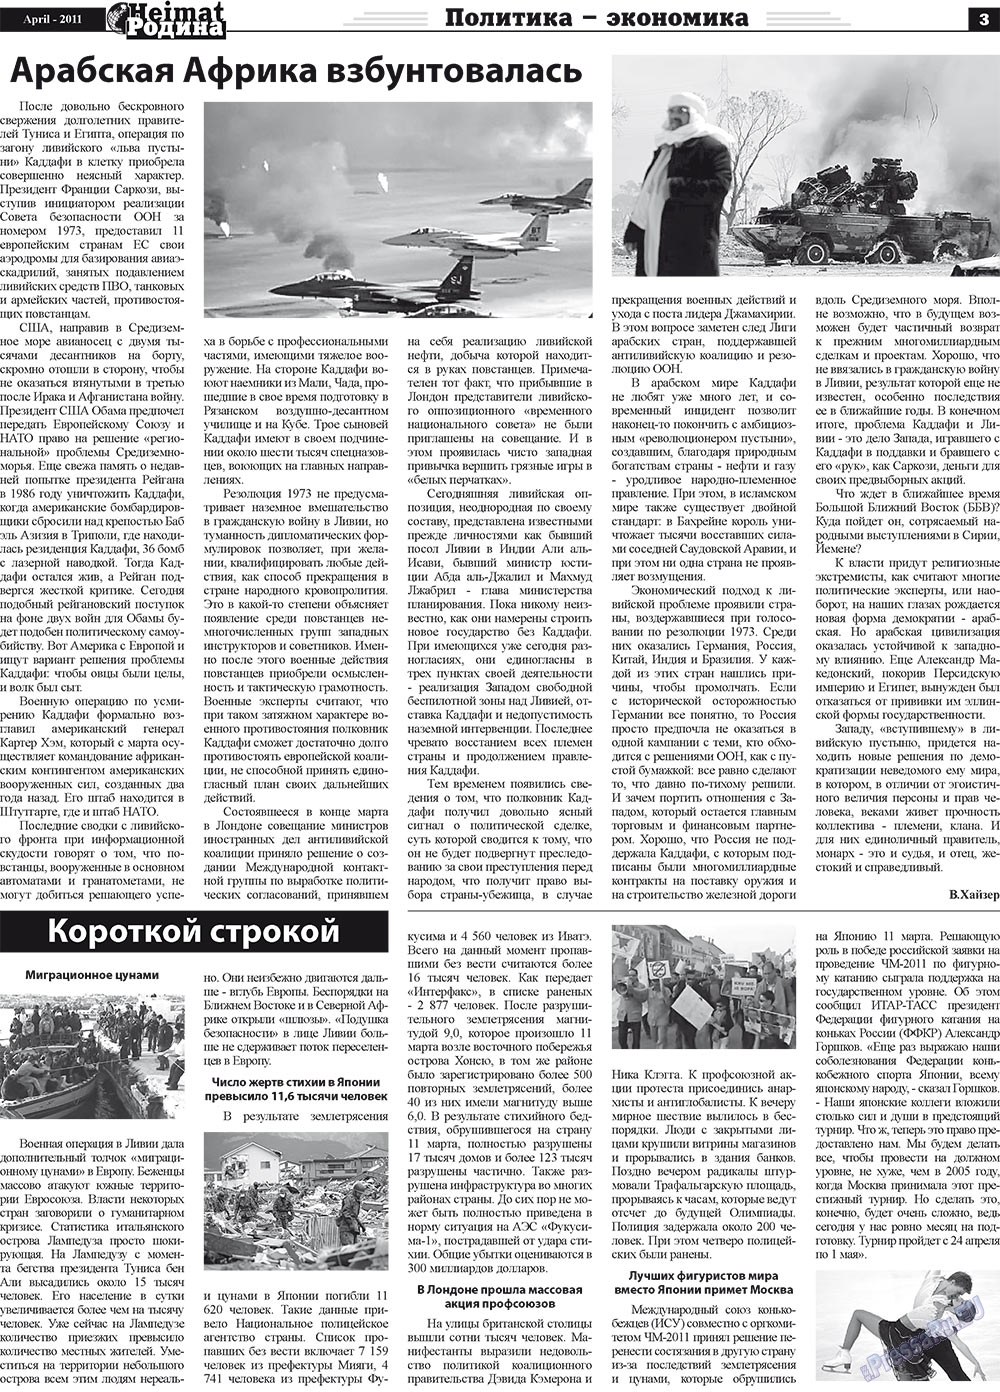 Heimat-Родина (газета). 2011 год, номер 4, стр. 3